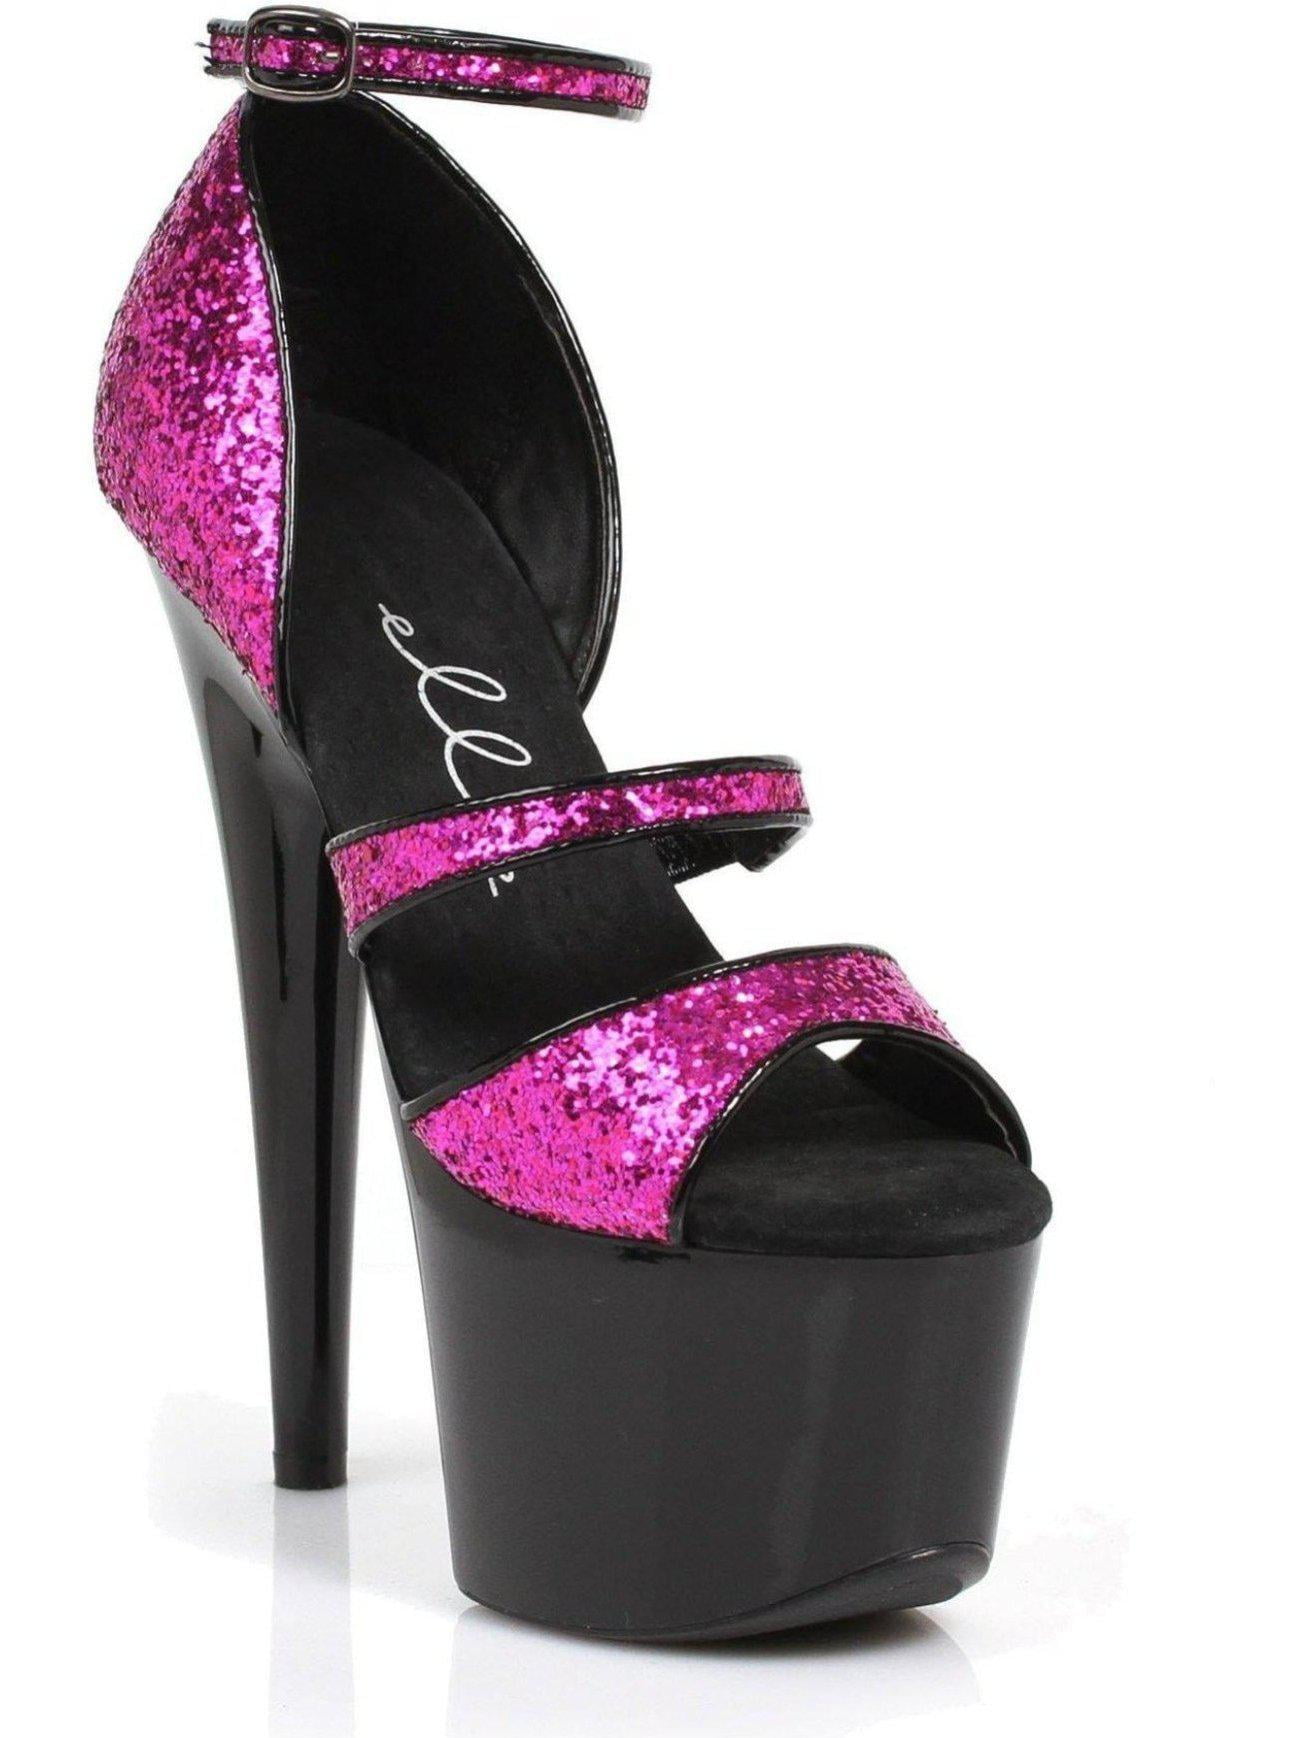 Ellie Shoes E-709-Samie 7 Stiletto with Glitter 6 / Fuchsia - Walmart.com